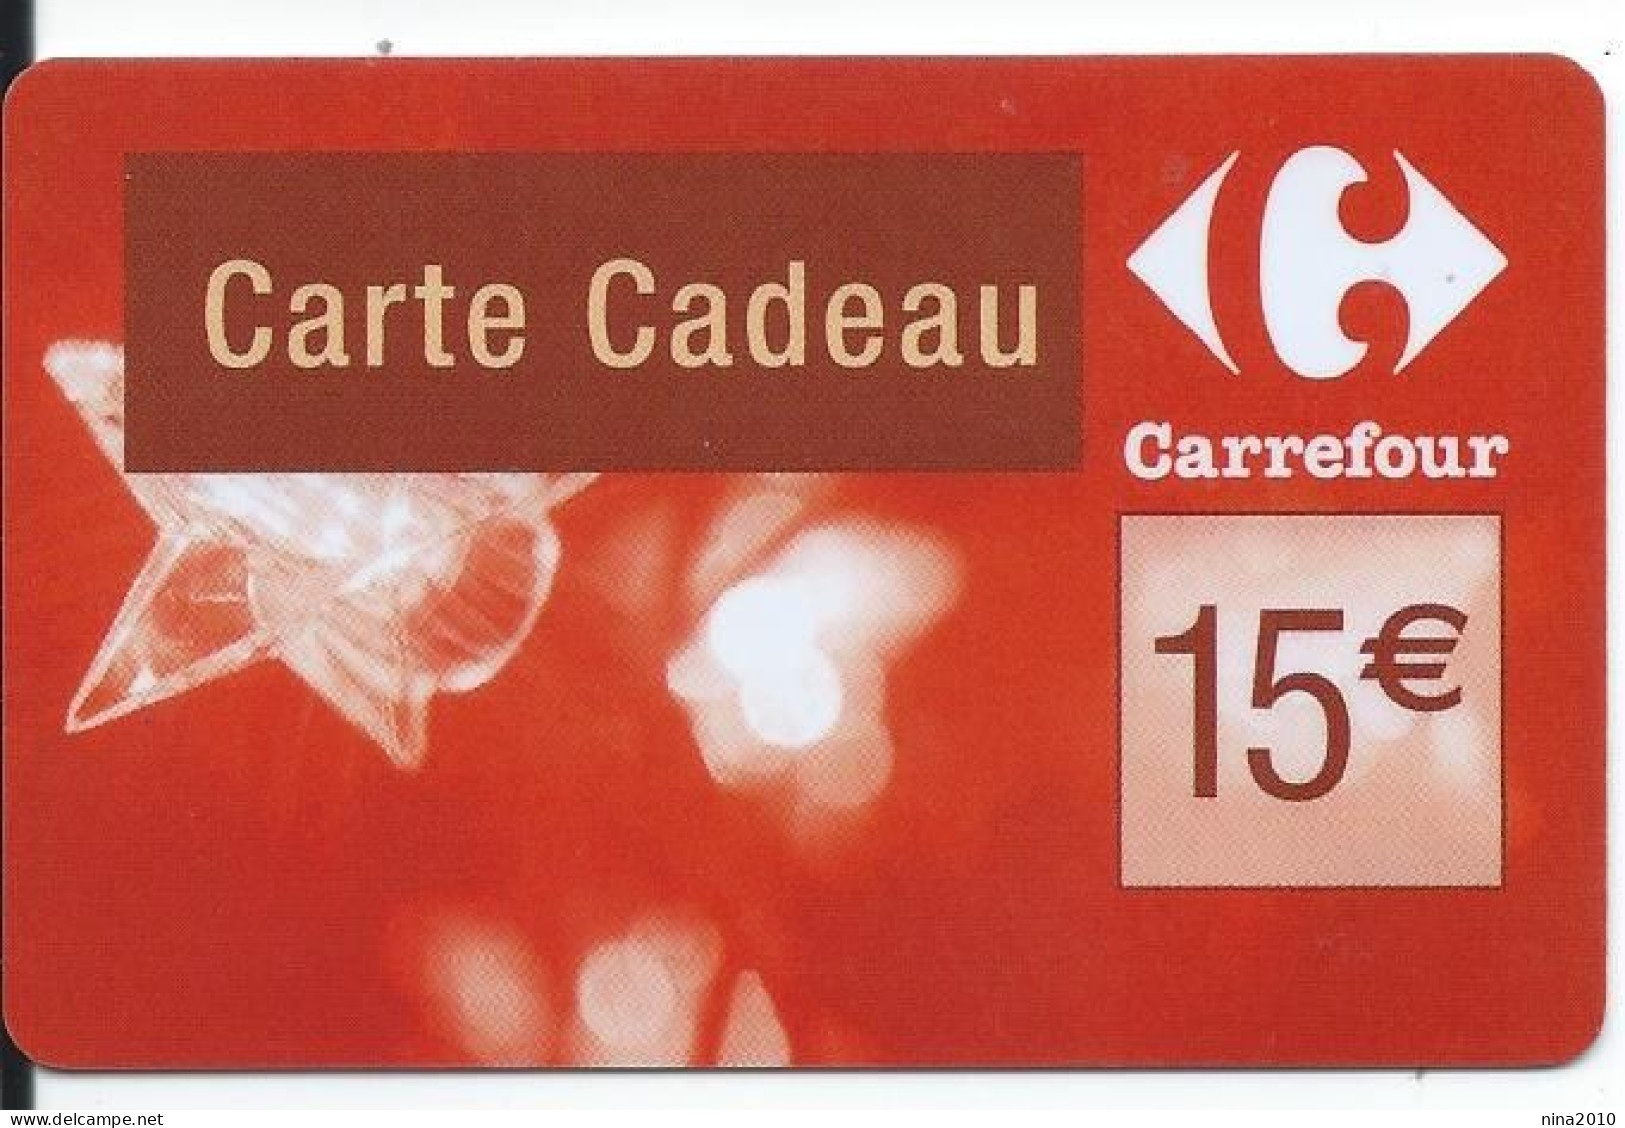 Carte Cadeau - Carrefour Verso 31/12/2009  - VOIR DESCRIPTION Avant Enchères -  GIFT CARD /GESCHENKKARTE - Gift Cards